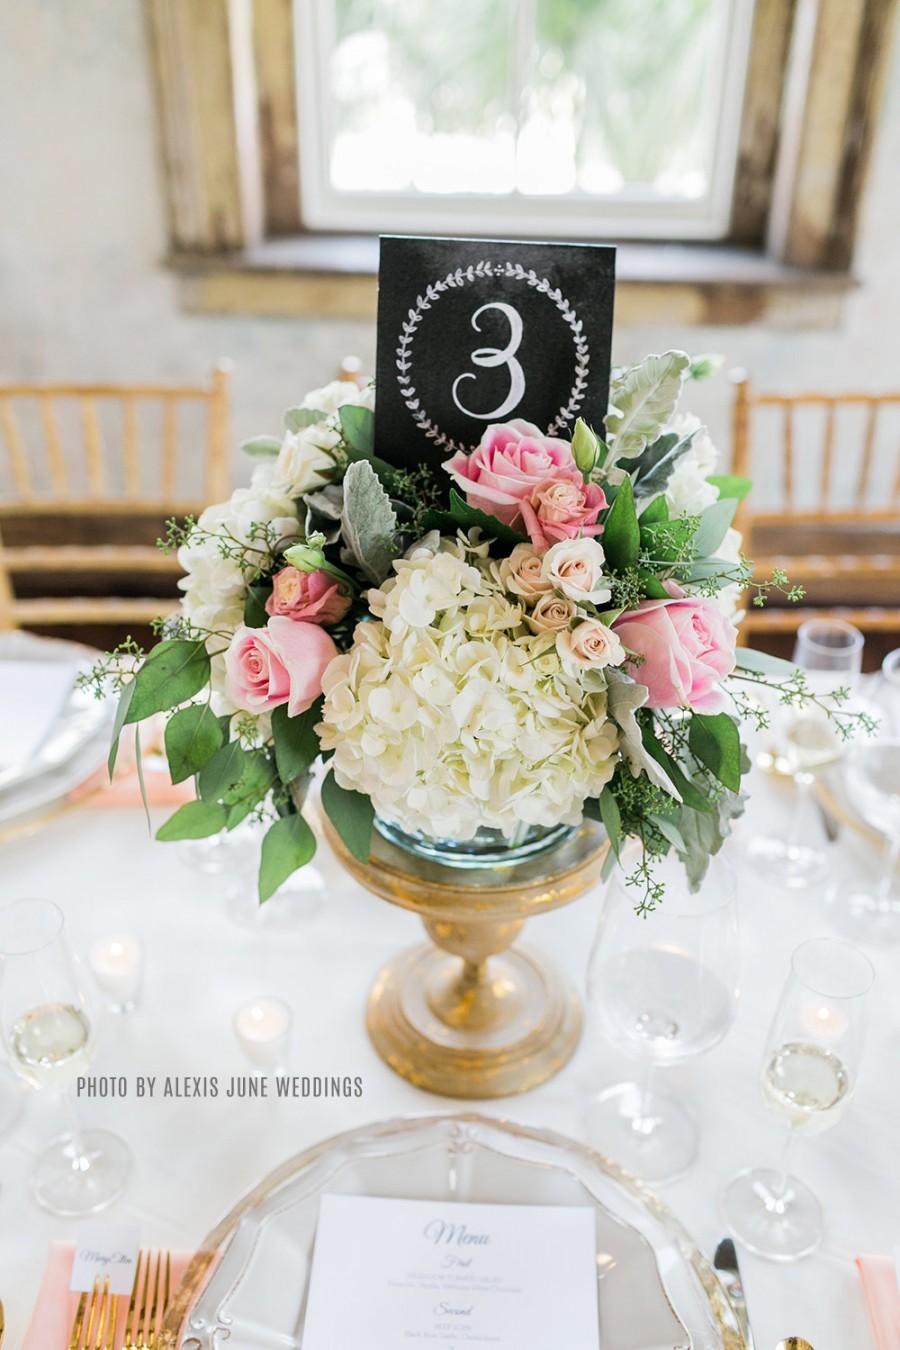 Wedding - Wedding Table Numbers - Vintage Wedding Table Numbers - Tented Table Numbers- Chalkboard Table Numbers